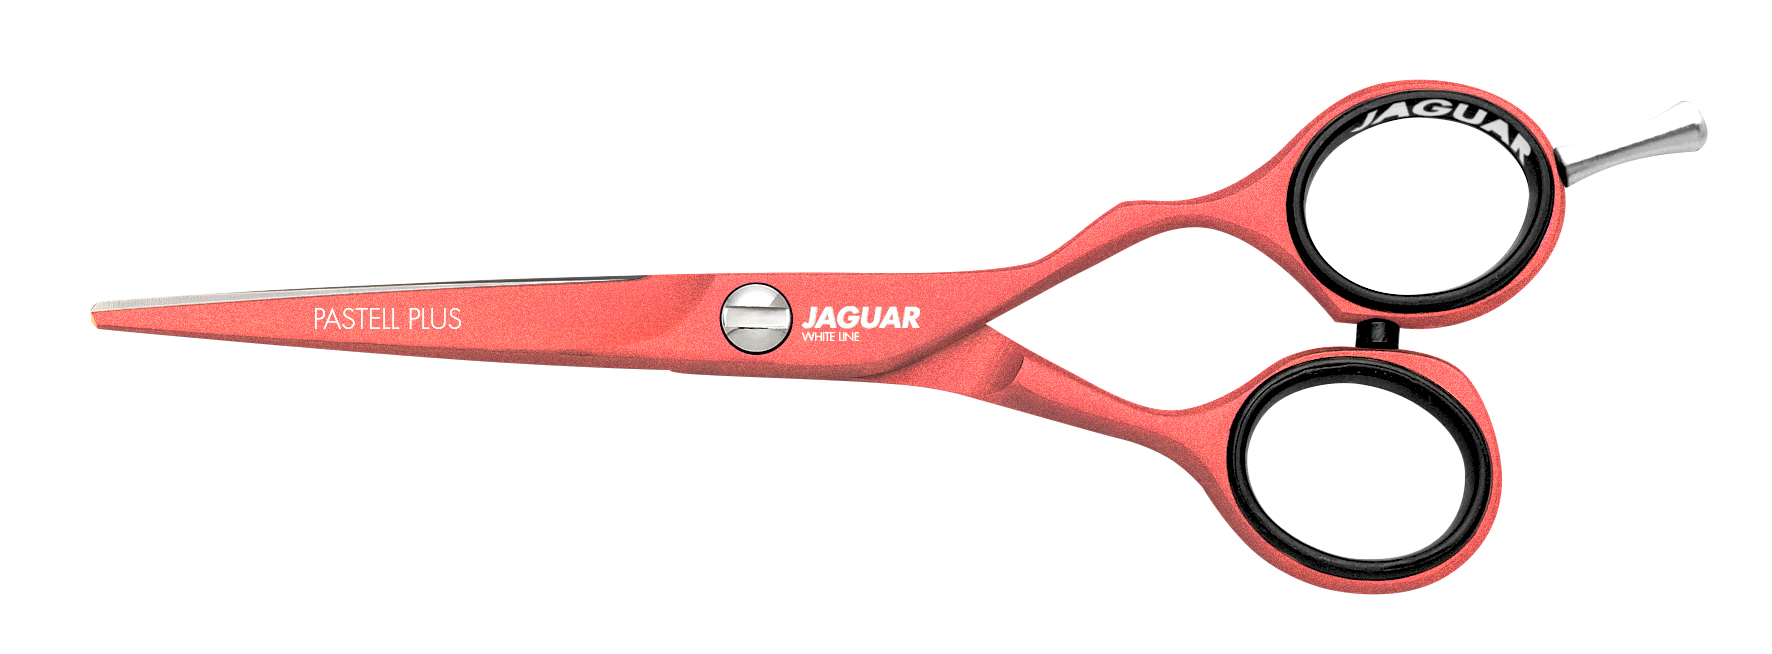 JAGUAR Ciseaux Pastell plus offset – Adaptés à la coupe.